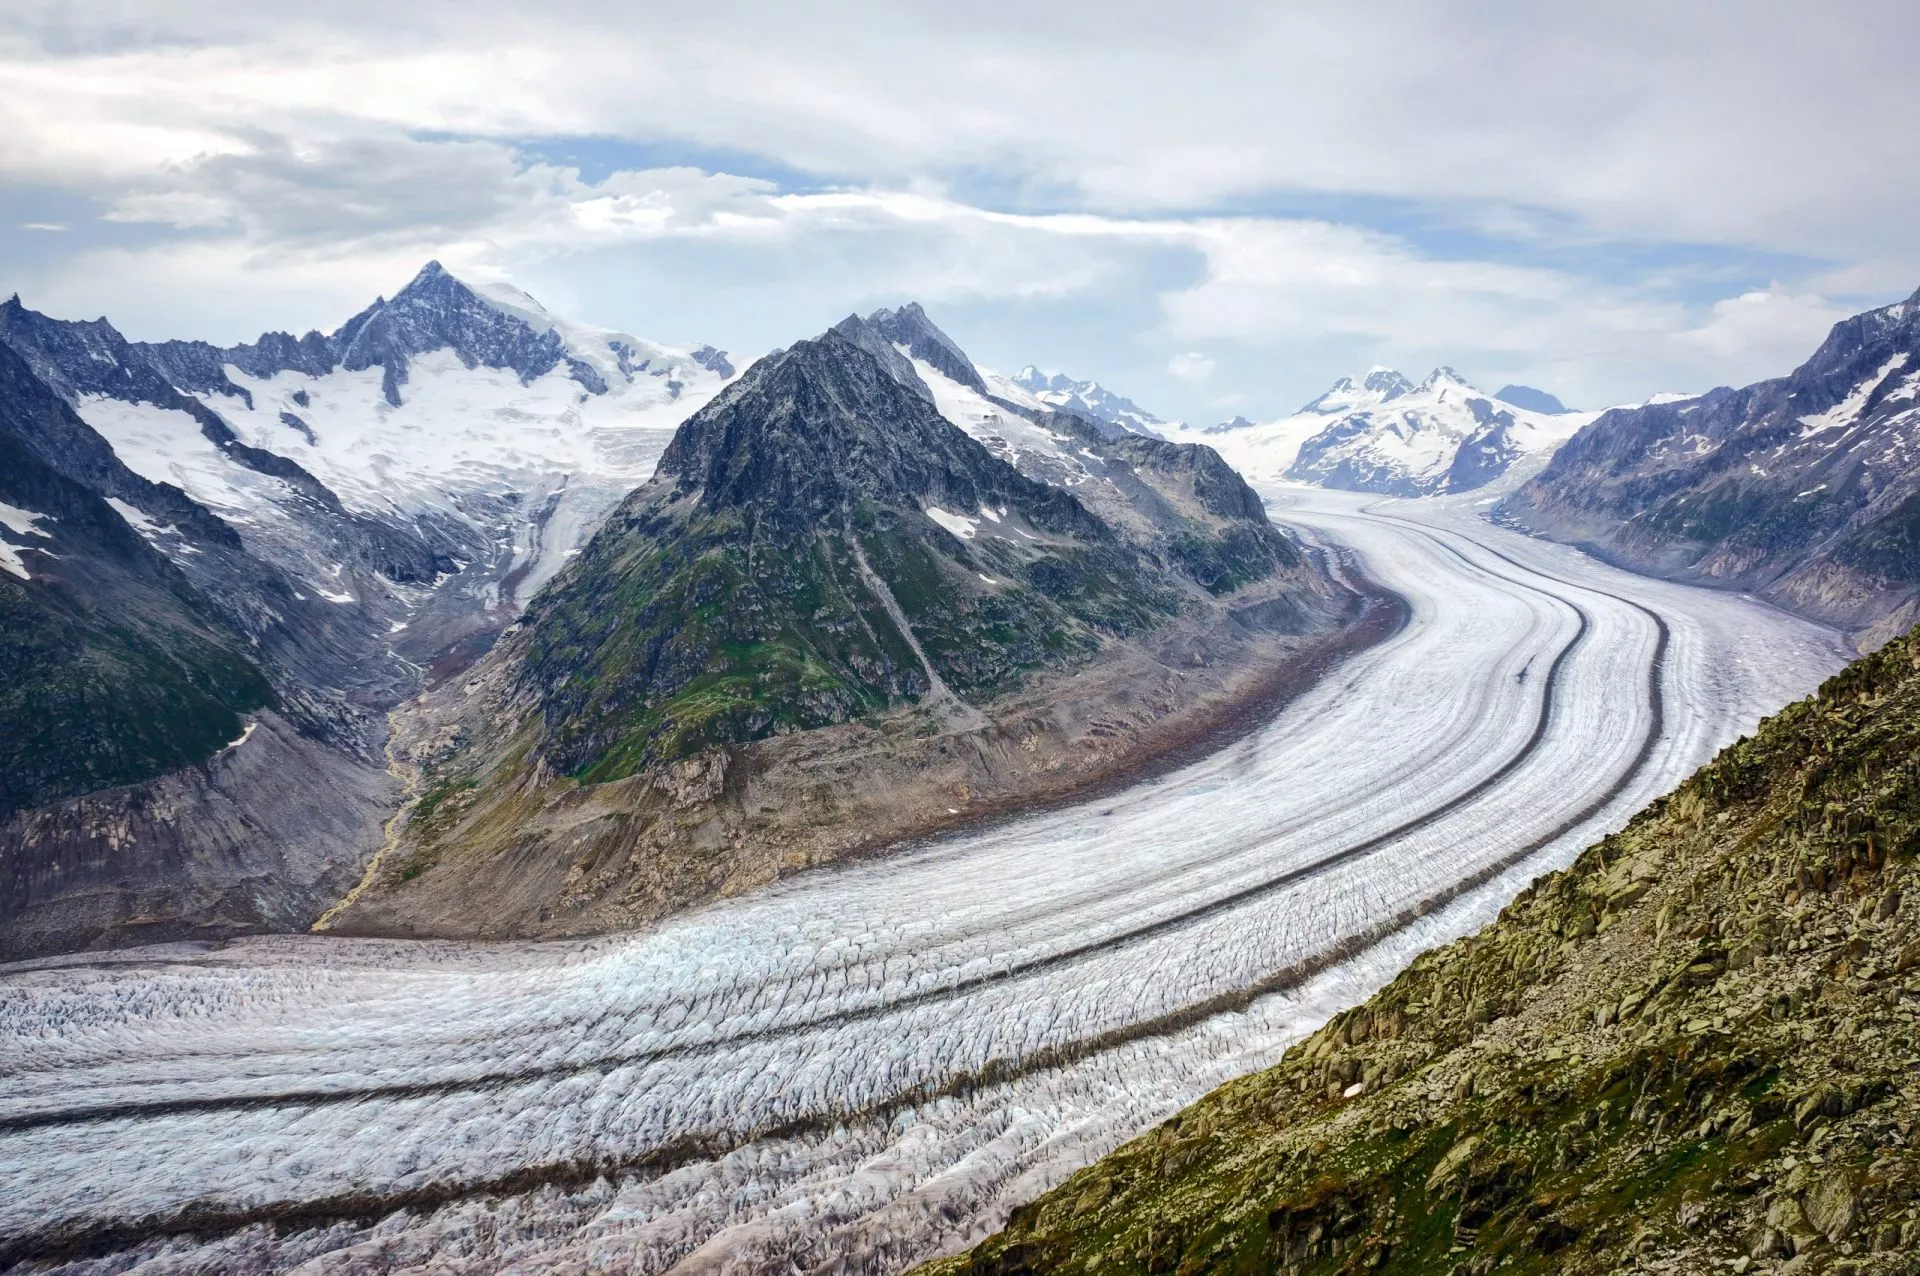 il ghiacciaio più grande d'europa è il ghiacciaio dell'aletsch